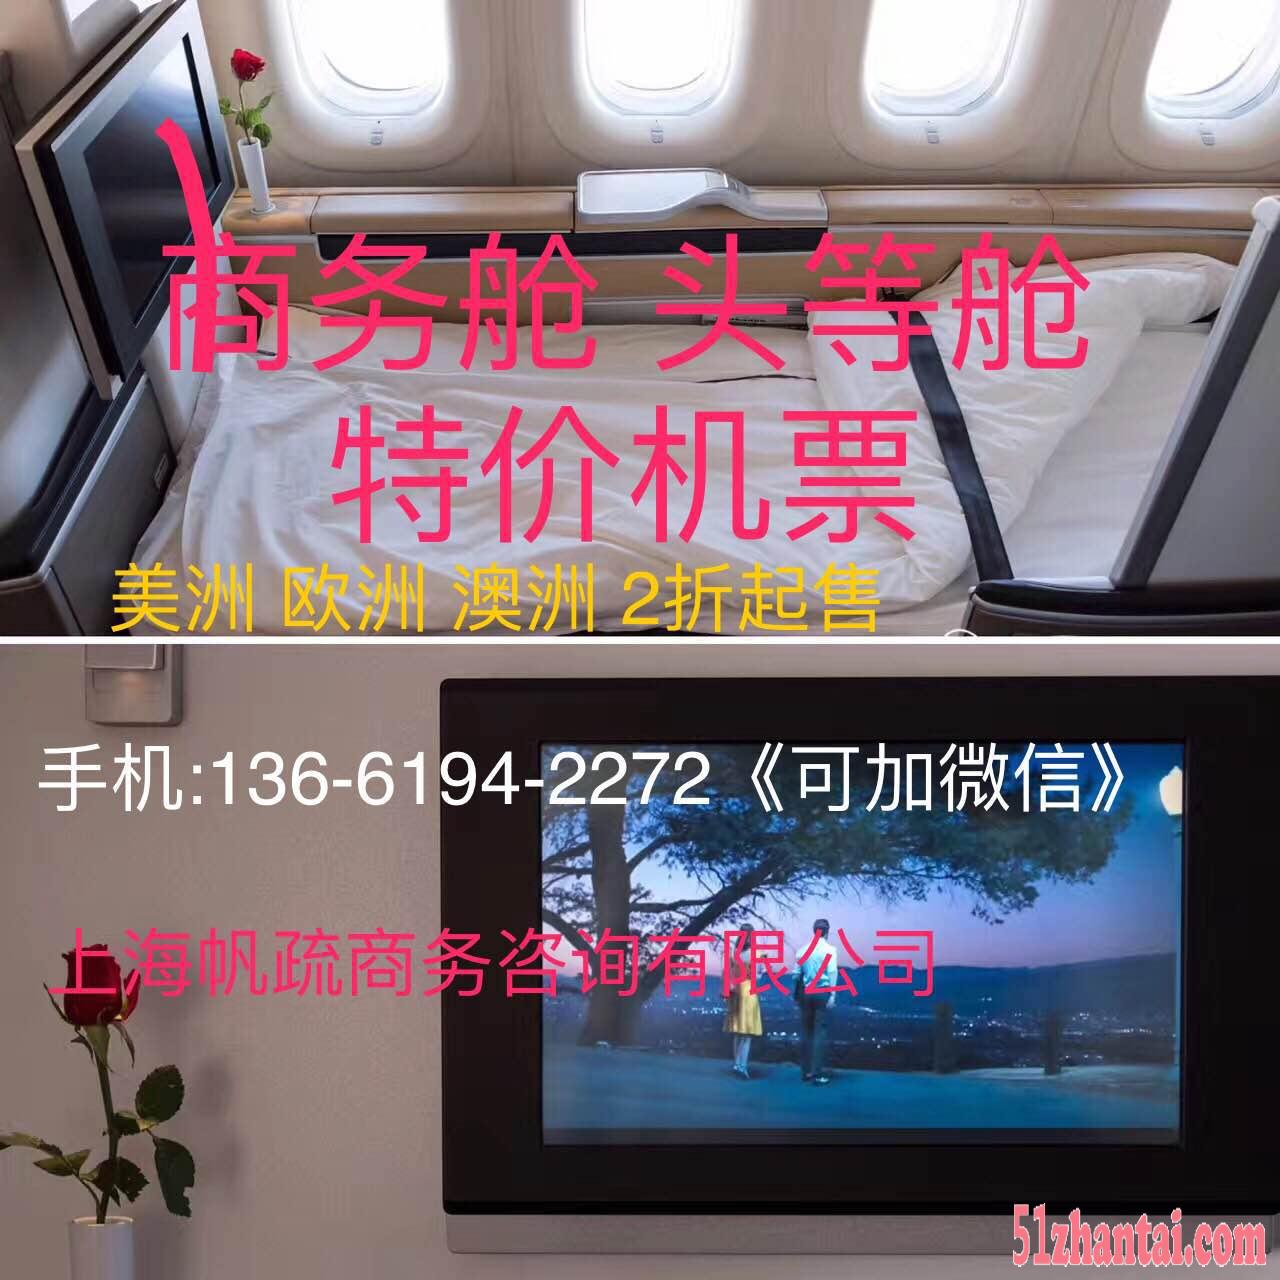 广州香港飞伦敦国泰航空2折特价头等舱商务舱公务舱折扣机票促销-图1